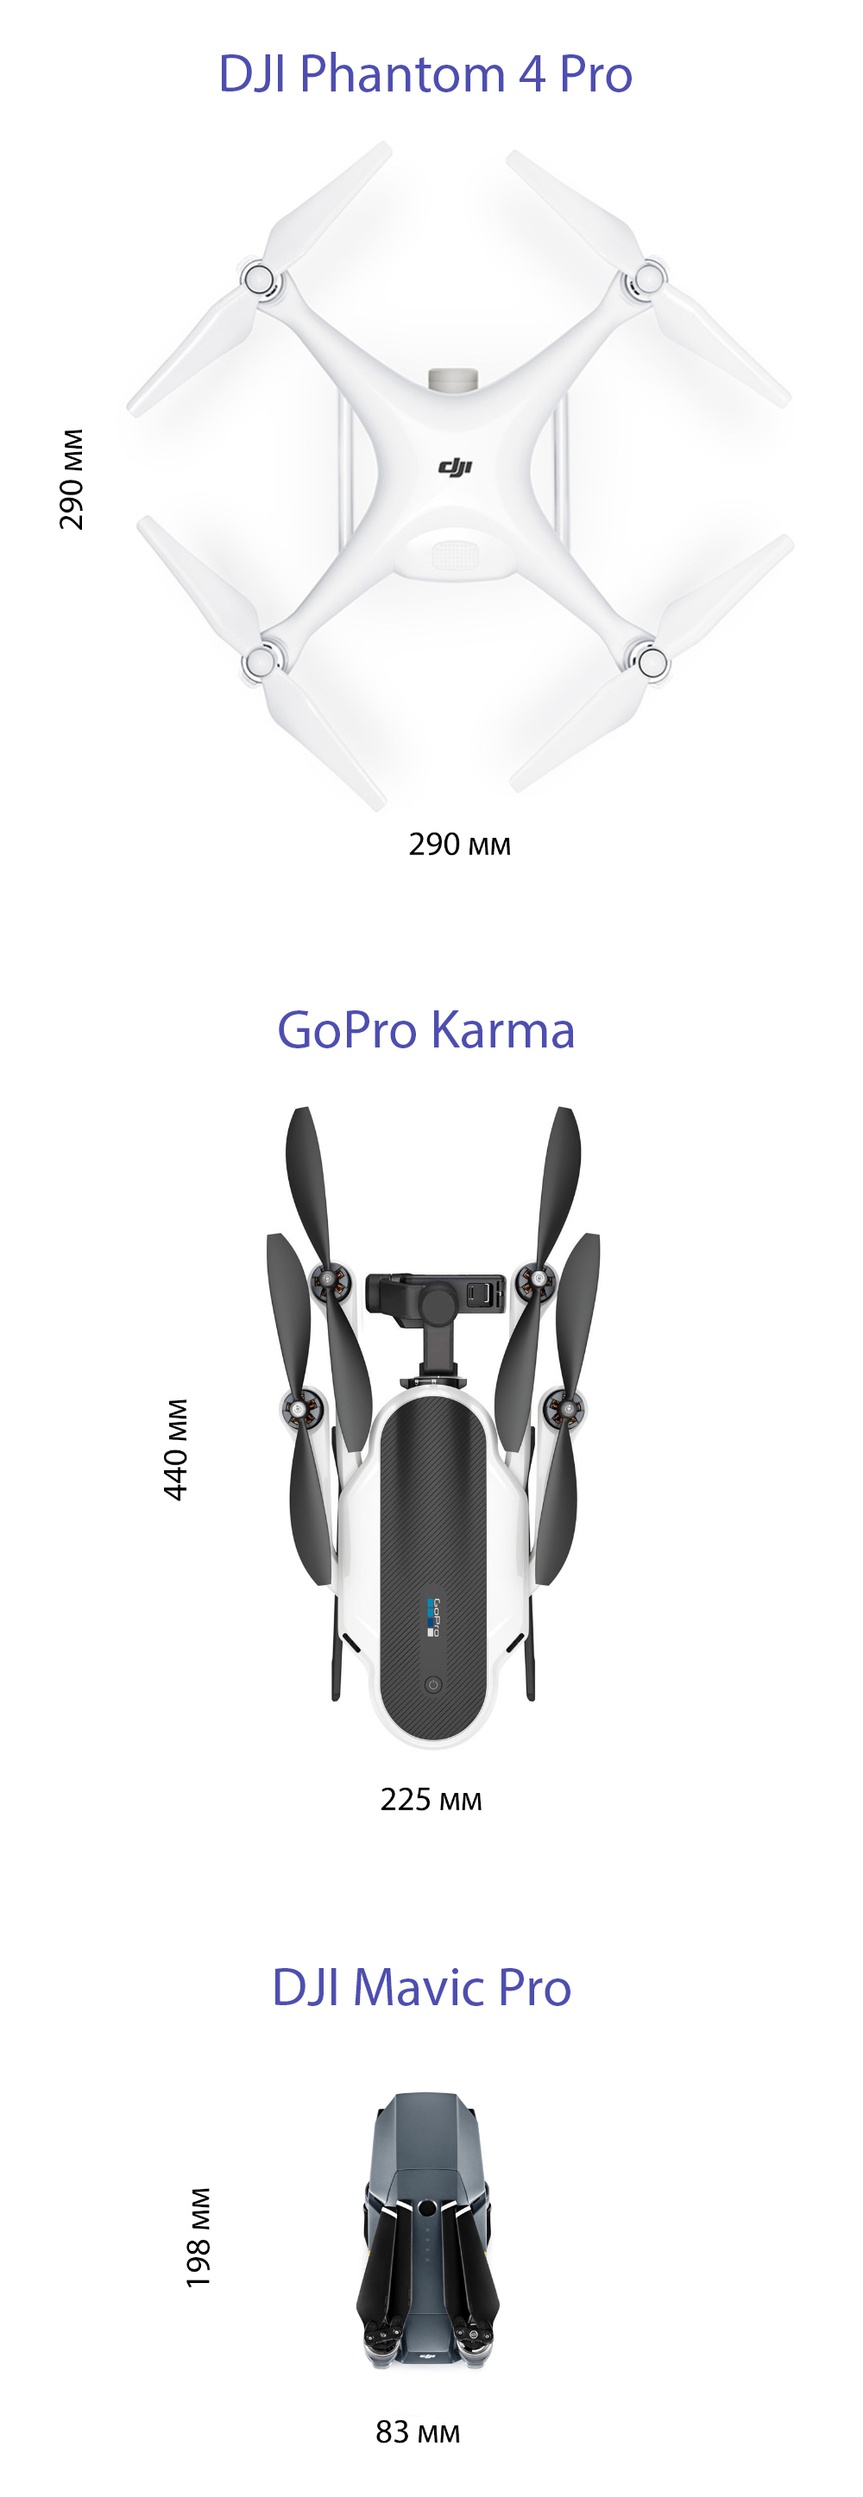 Не, GoPro, вы серьезно? И это даже не первоапрельская шутка? В какой извращенной опиатами вселенной это называется «портативностью»? Только потому что ноги складываются и плоский что-ли? Тогда лопата — ультрапортативный тревел-девайс